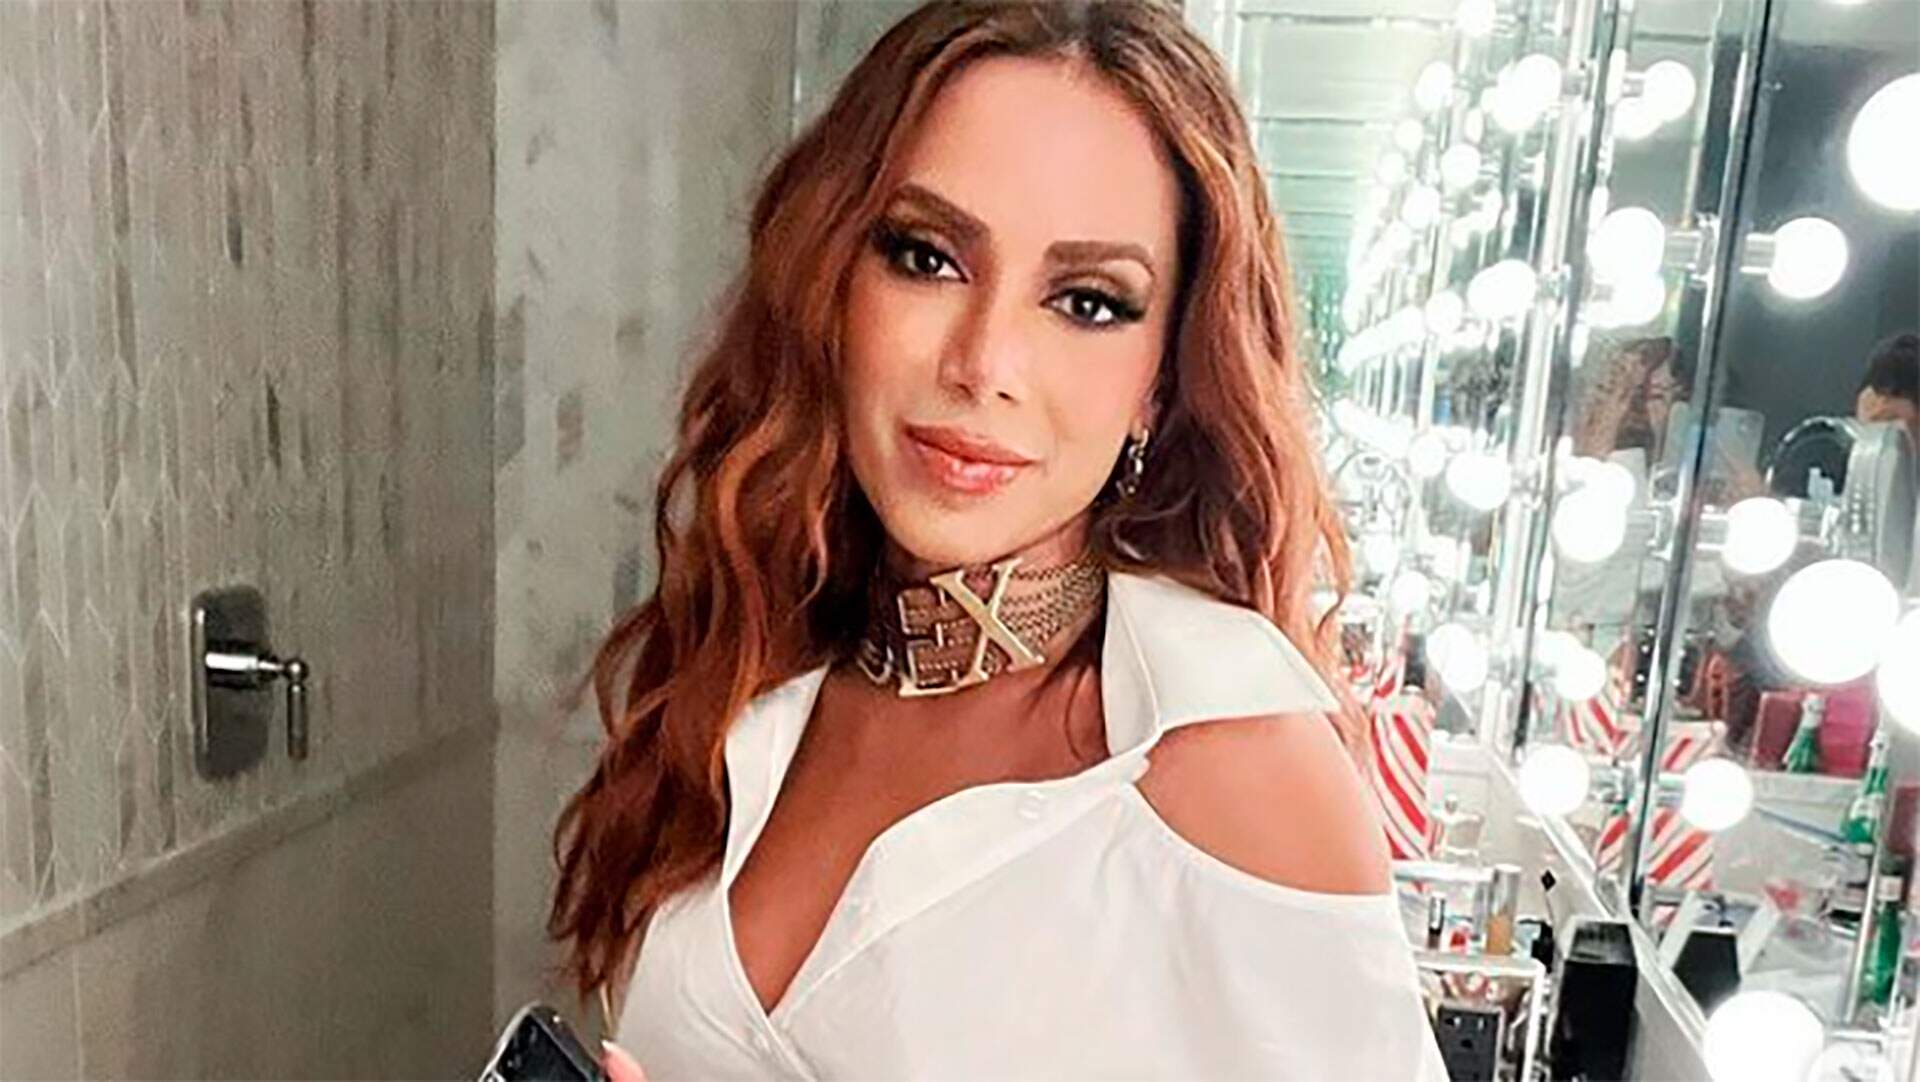 Anitta reúne seus melhores looks em vídeo para o Instagram: “Apenas alguns” - Metropolitana FM